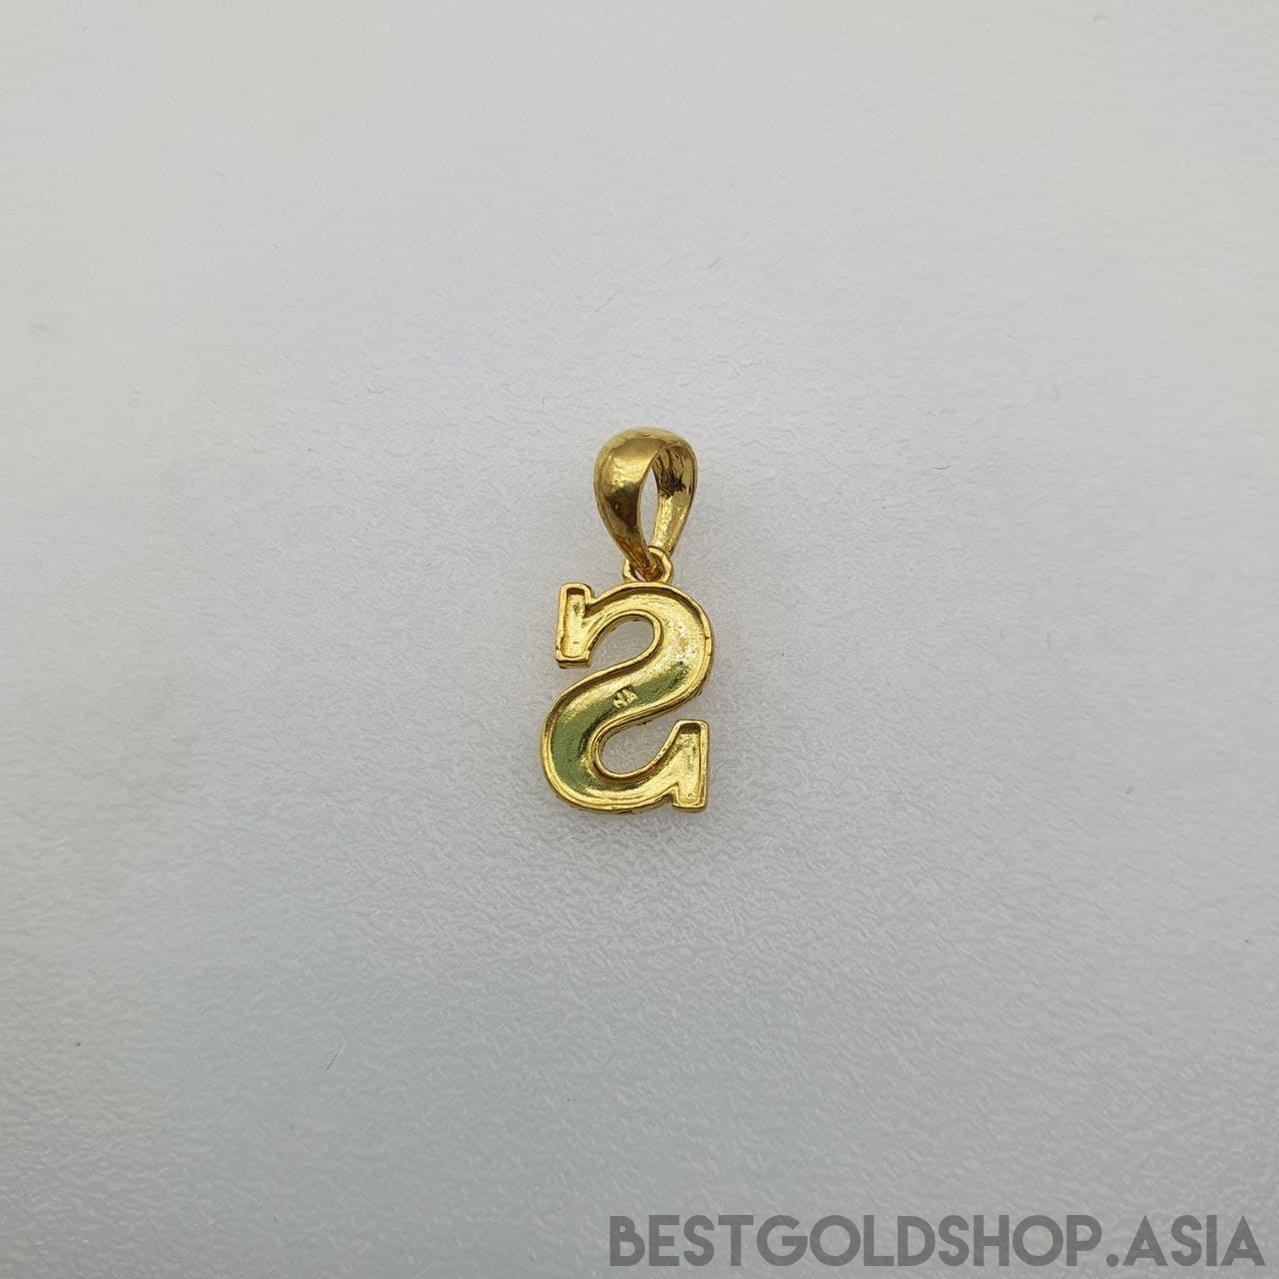 22k / 916 Gold Alphabet Pendant V4-916 gold-Best Gold Shop